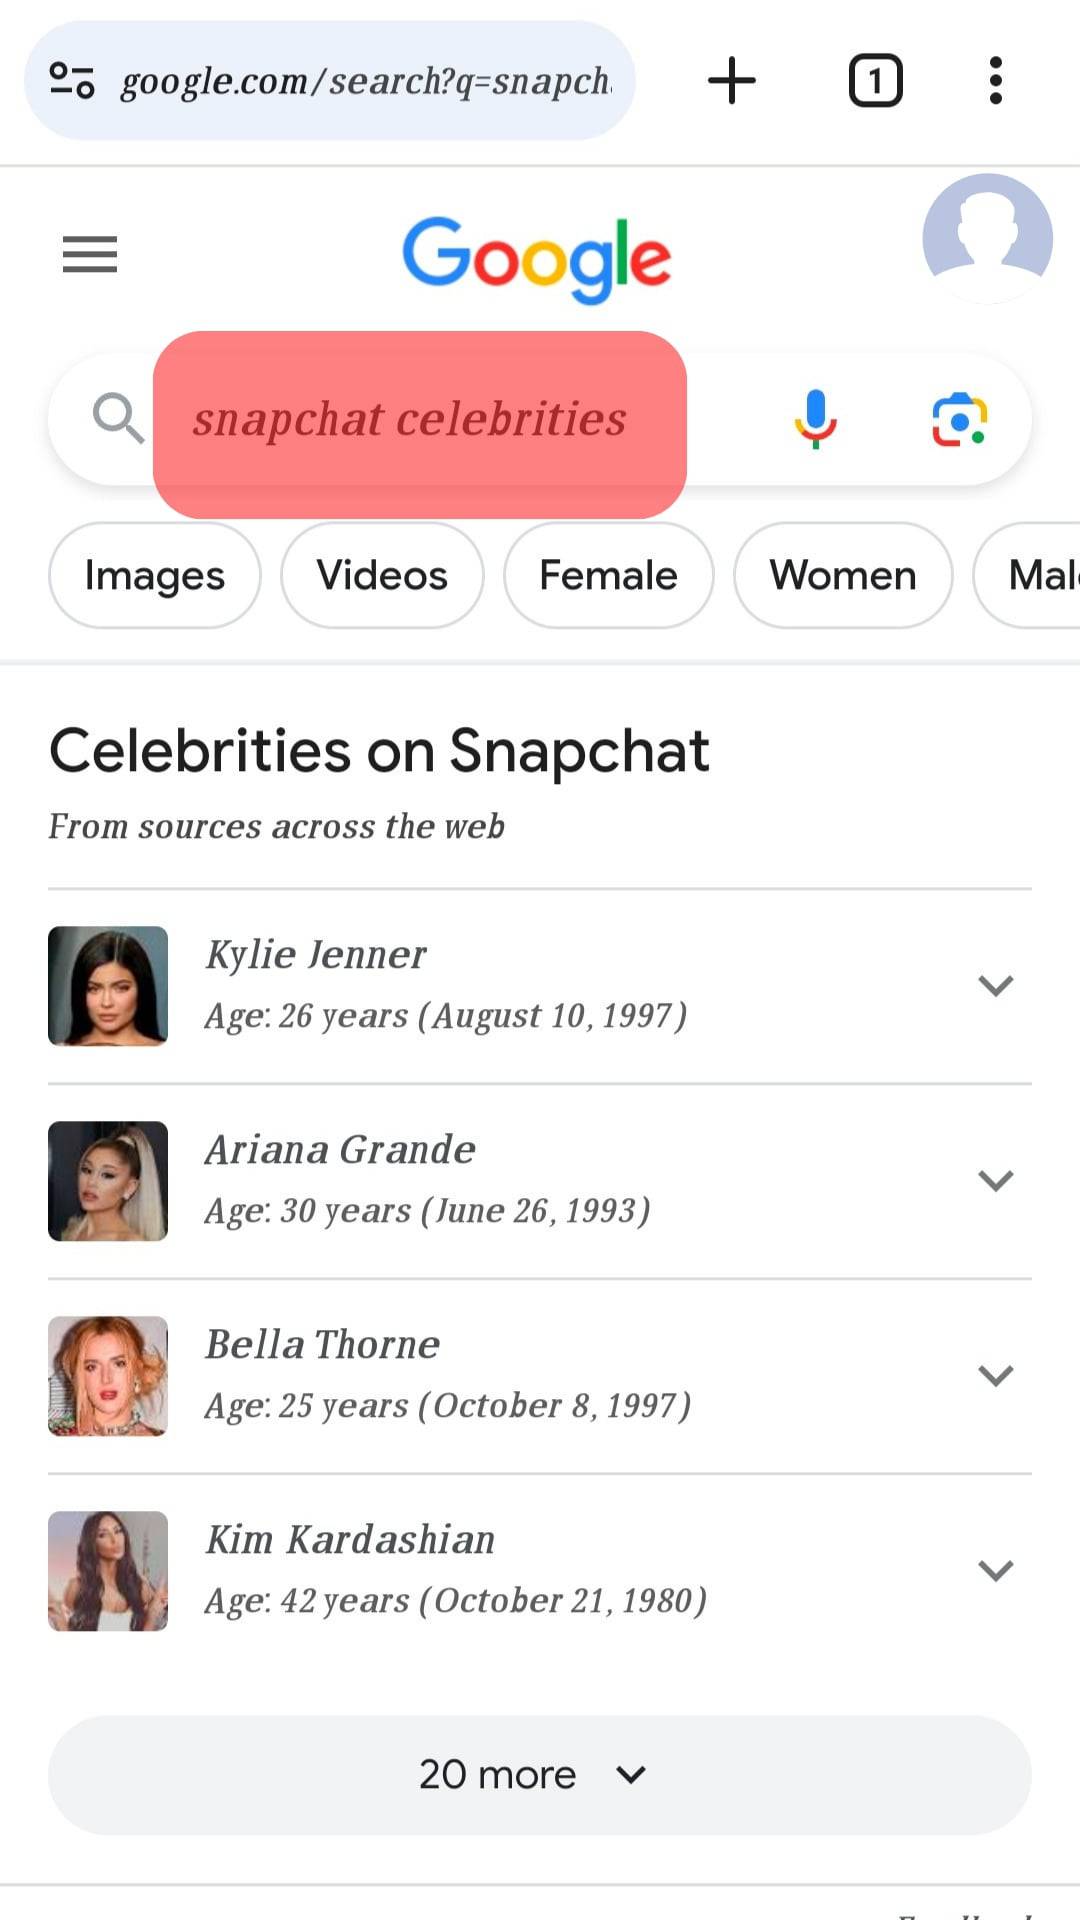 Type “Snapchat Celebrities”.